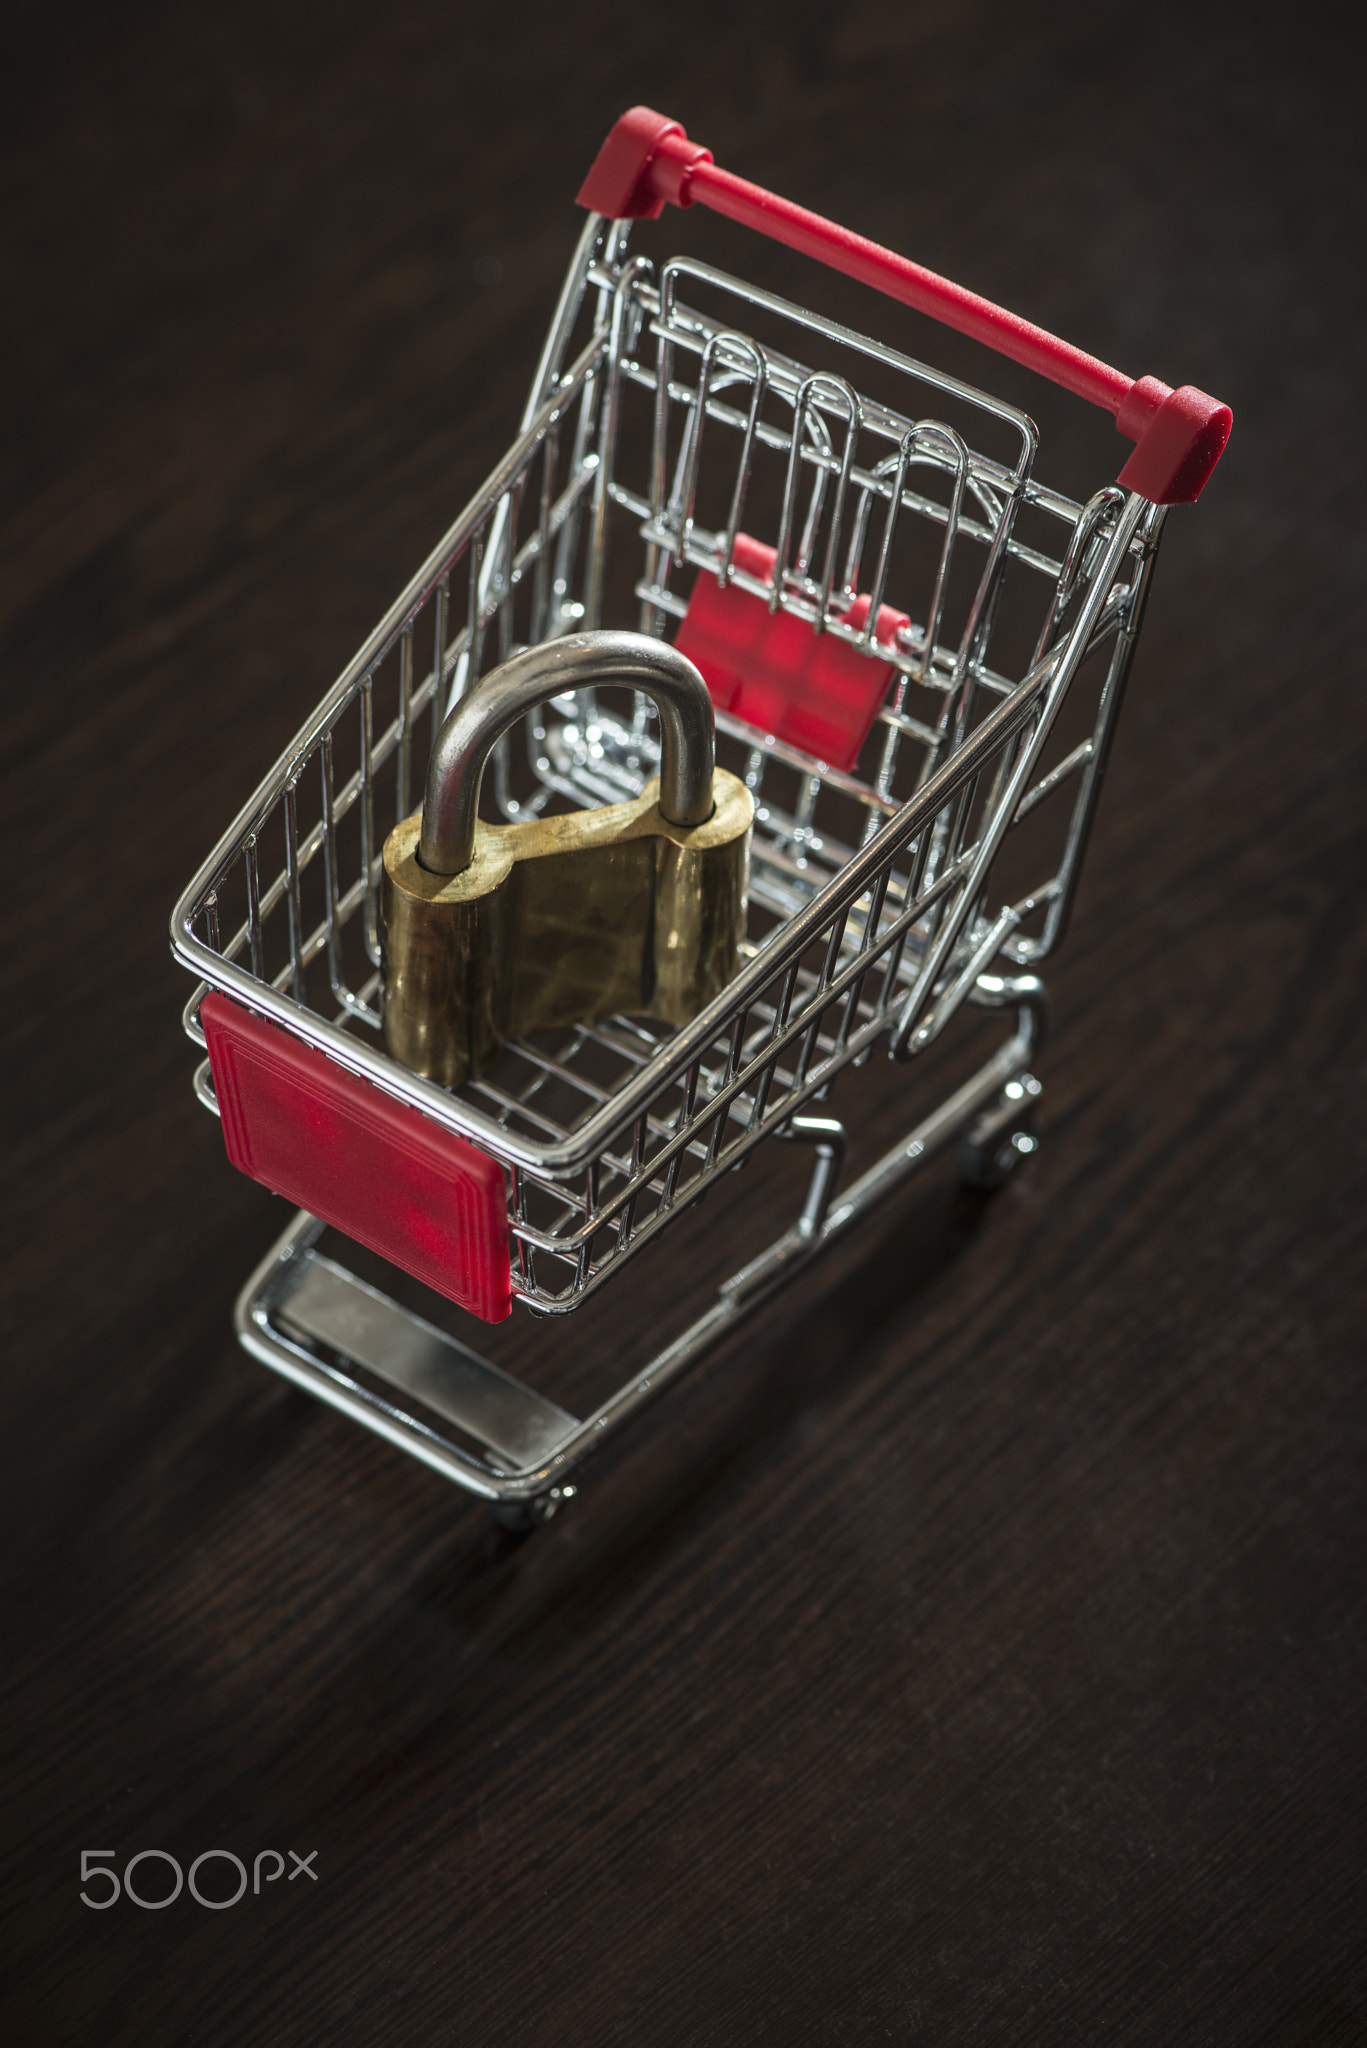 Shopping cart and padlock. Small shopping cart